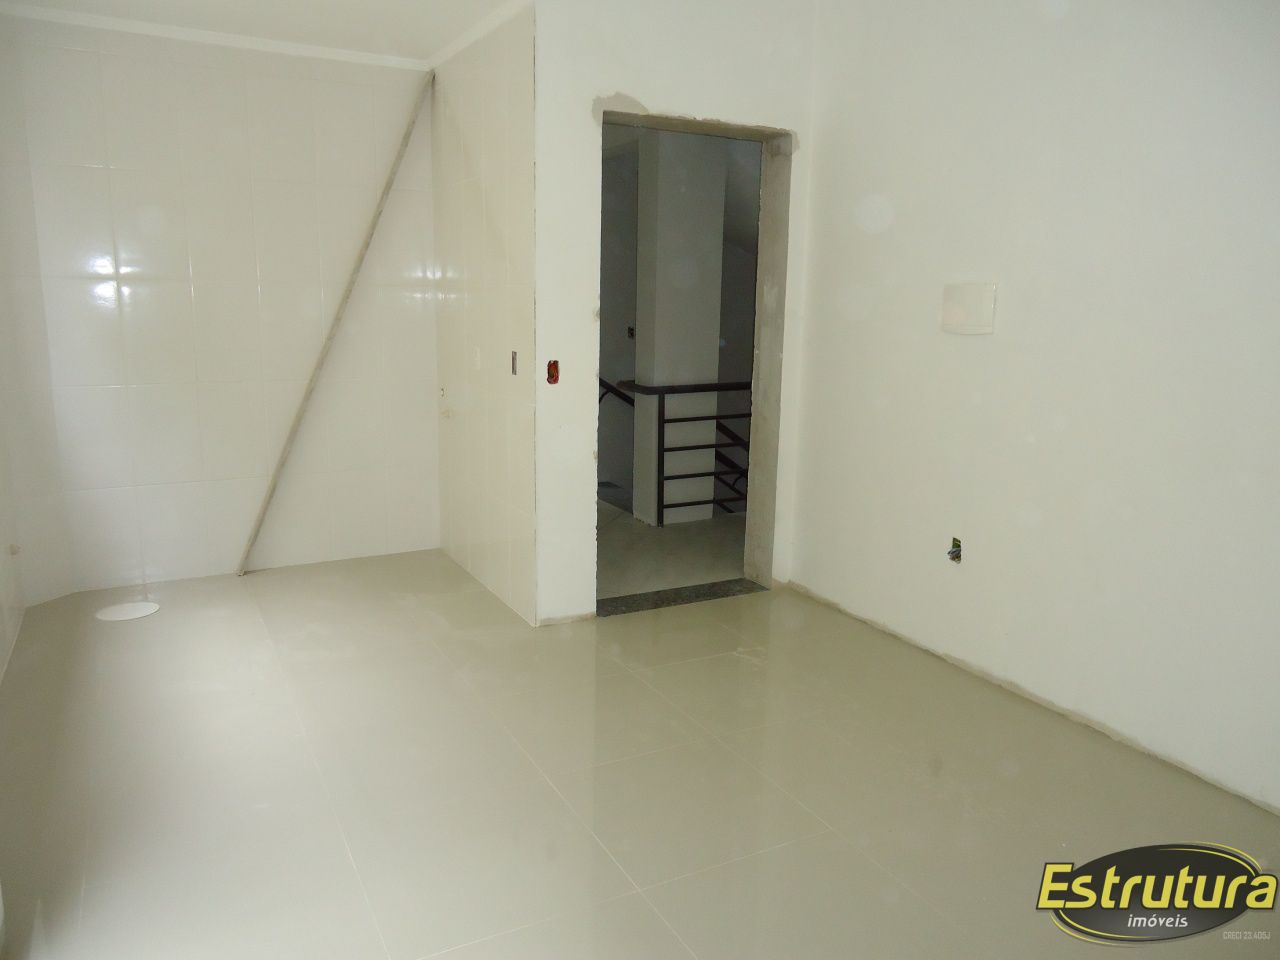 Apartamento com 1 Dormitórios à venda, 36 m² por R$ 168.000,00